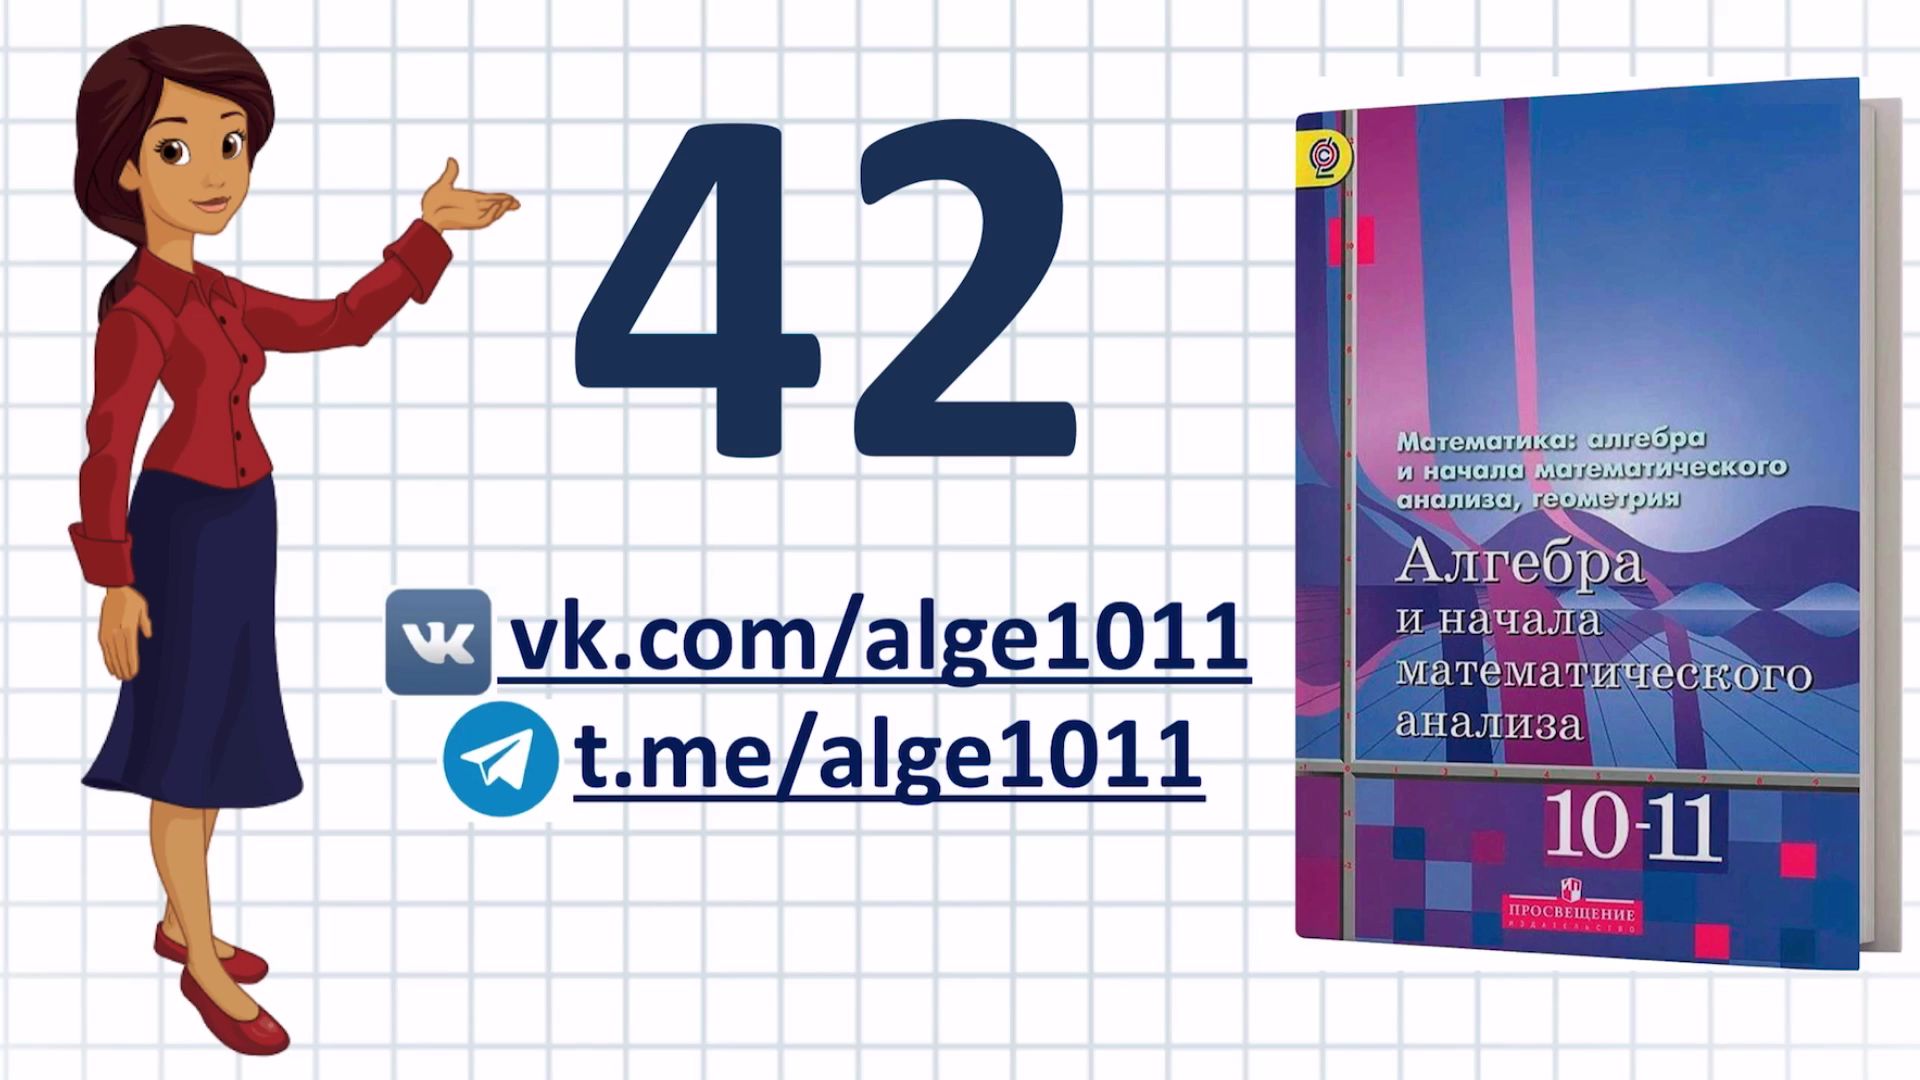 Видеоразбор № 42 из учебника Алимова «Алгебра 10-11 класс»